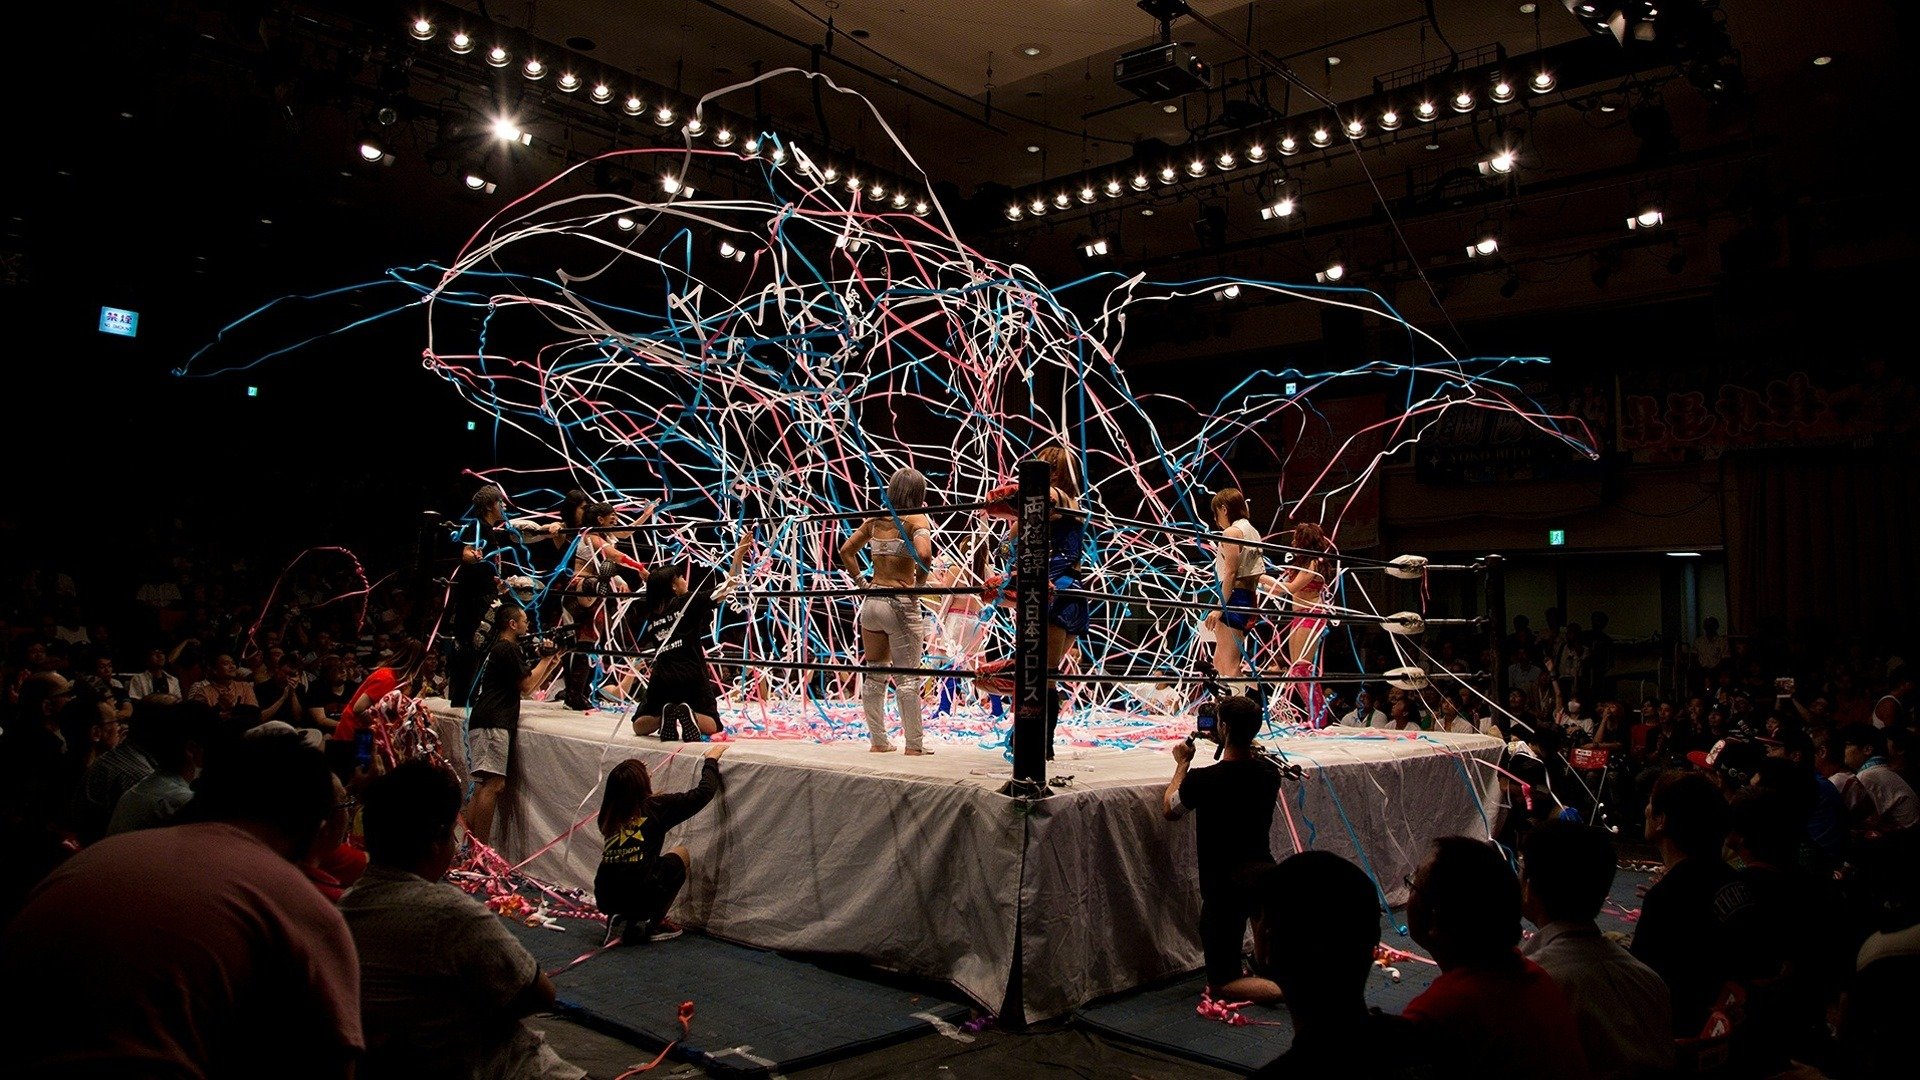 7. Japan's Finest Wrestlers